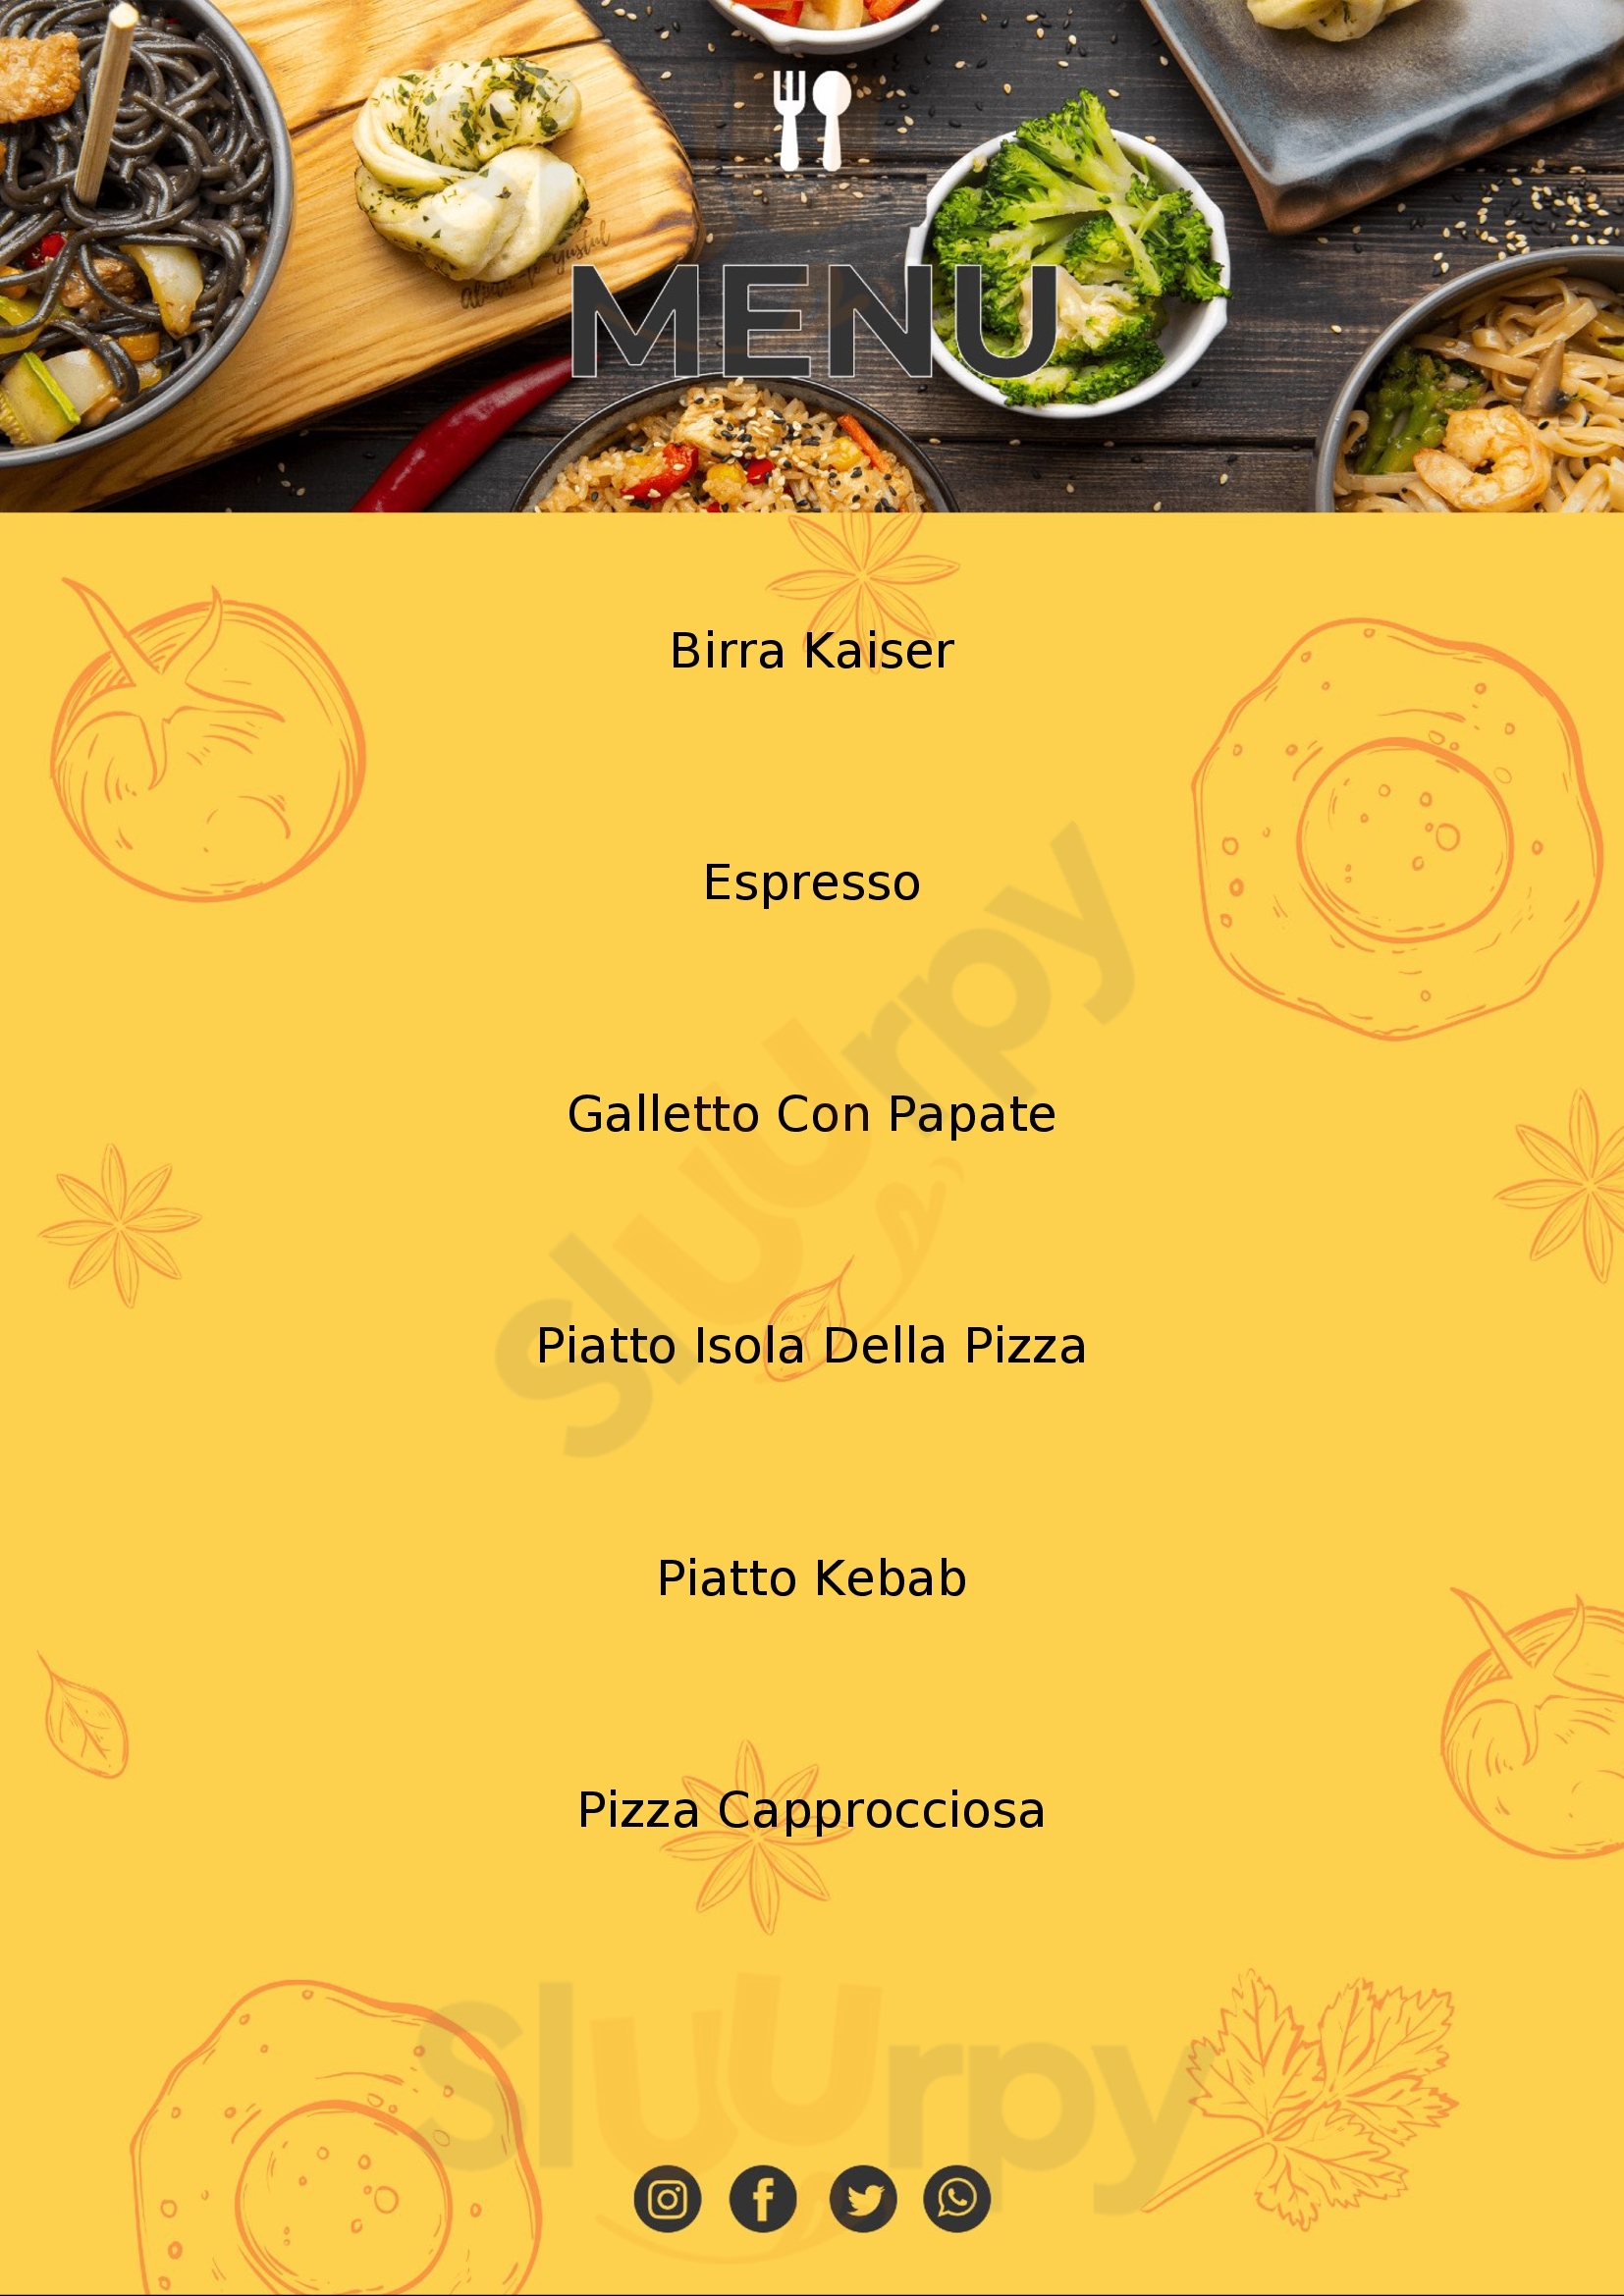 L'Isola della Pizza San Daniele del Friuli menù 1 pagina